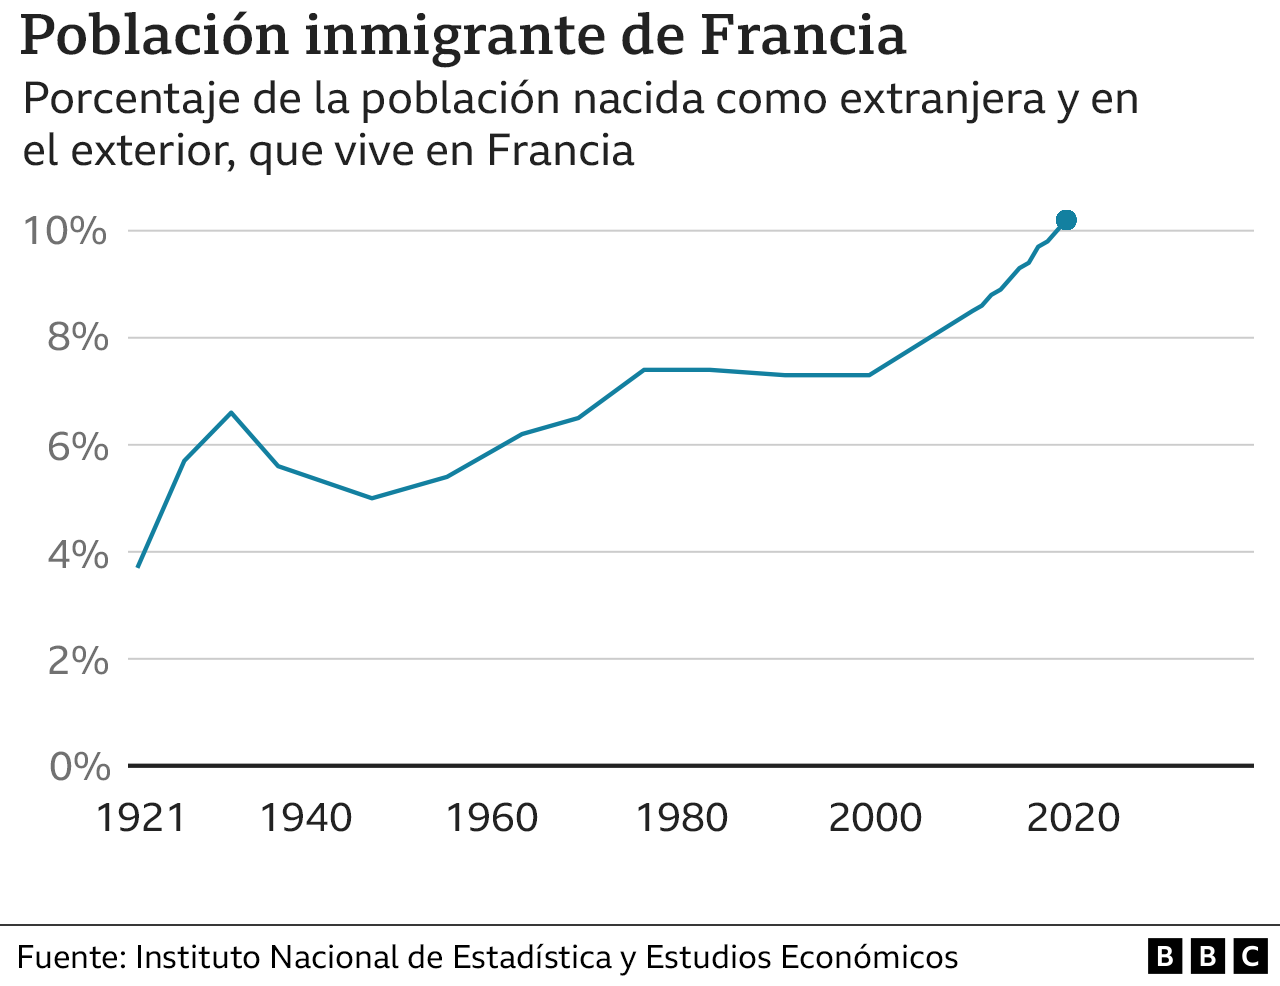 Población inmigrante en Francia